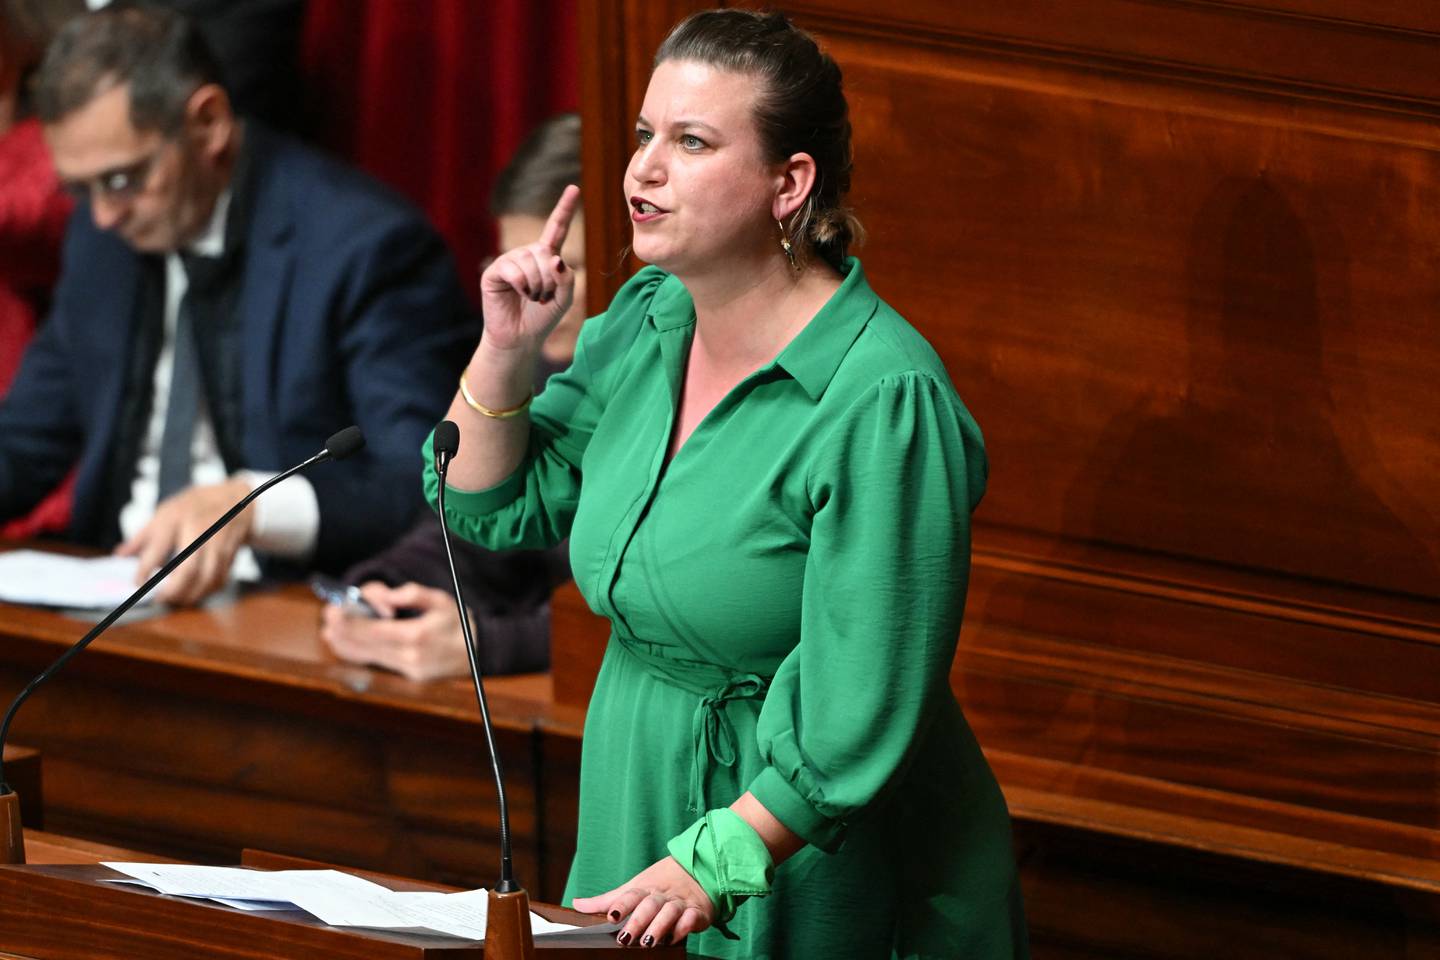 La presidenta del grupo Nupes en la Asamblea Nacional, Mathilde Panot, pronuncia un discurso durante la convocatoria de un congreso de ambas cámaras del parlamento en Versalles.